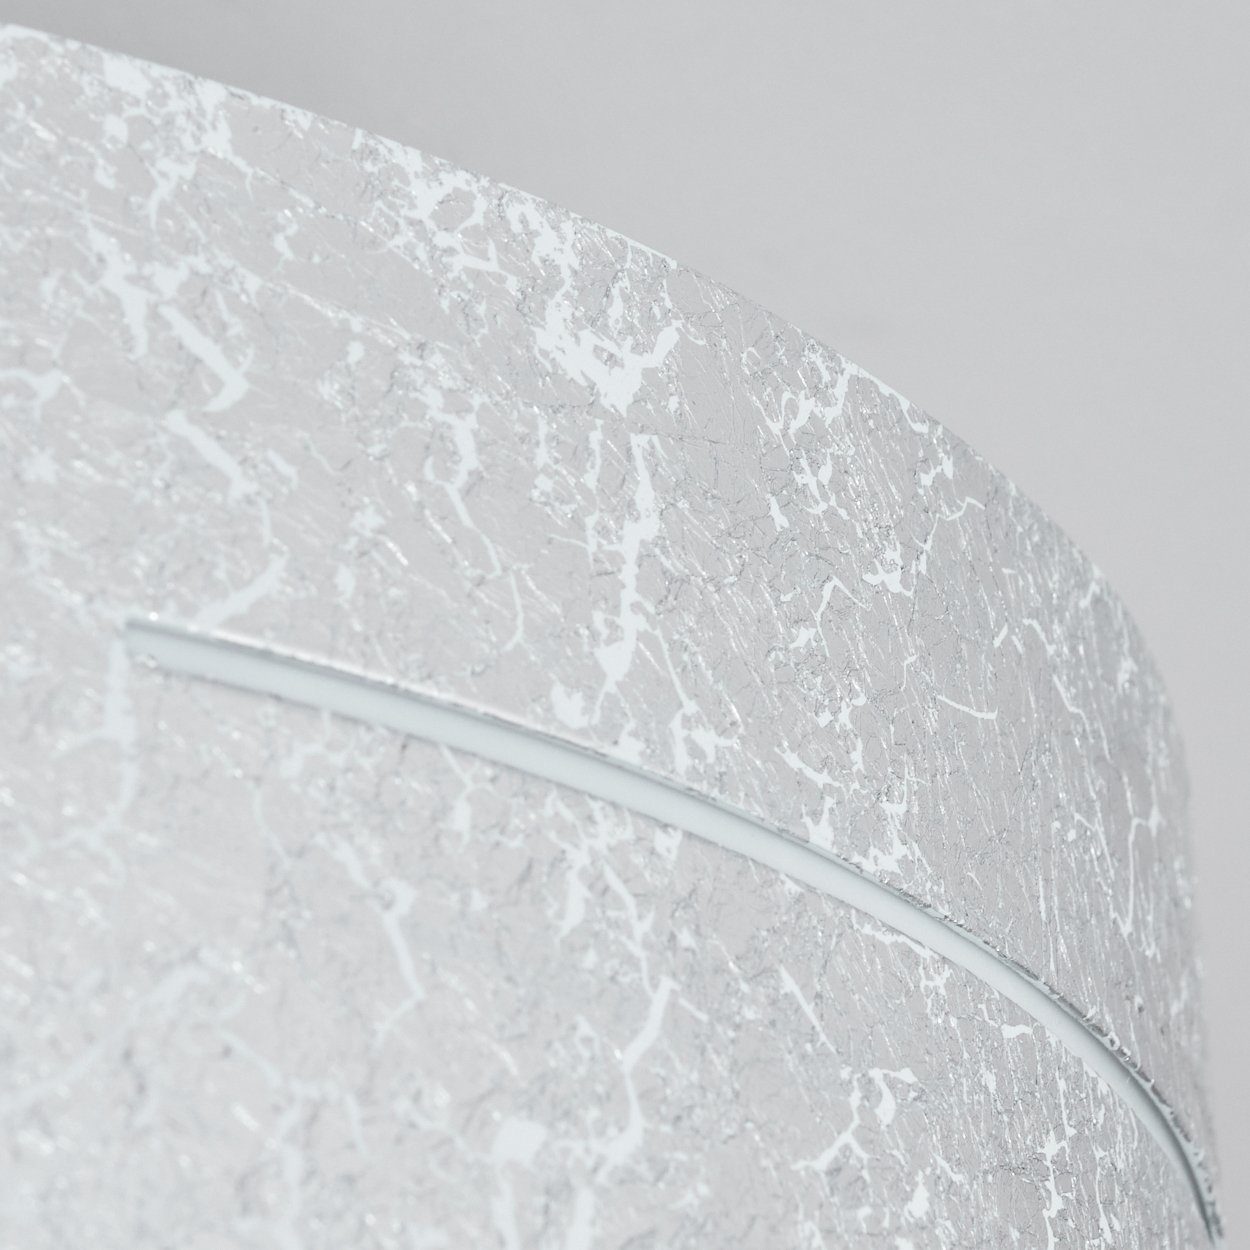 in runde Metall/Glas hofstein »Spano« aus Deckenleuchte Deckenlampe Silber/Weiß, ohne Leuchtmittel, 3xE27